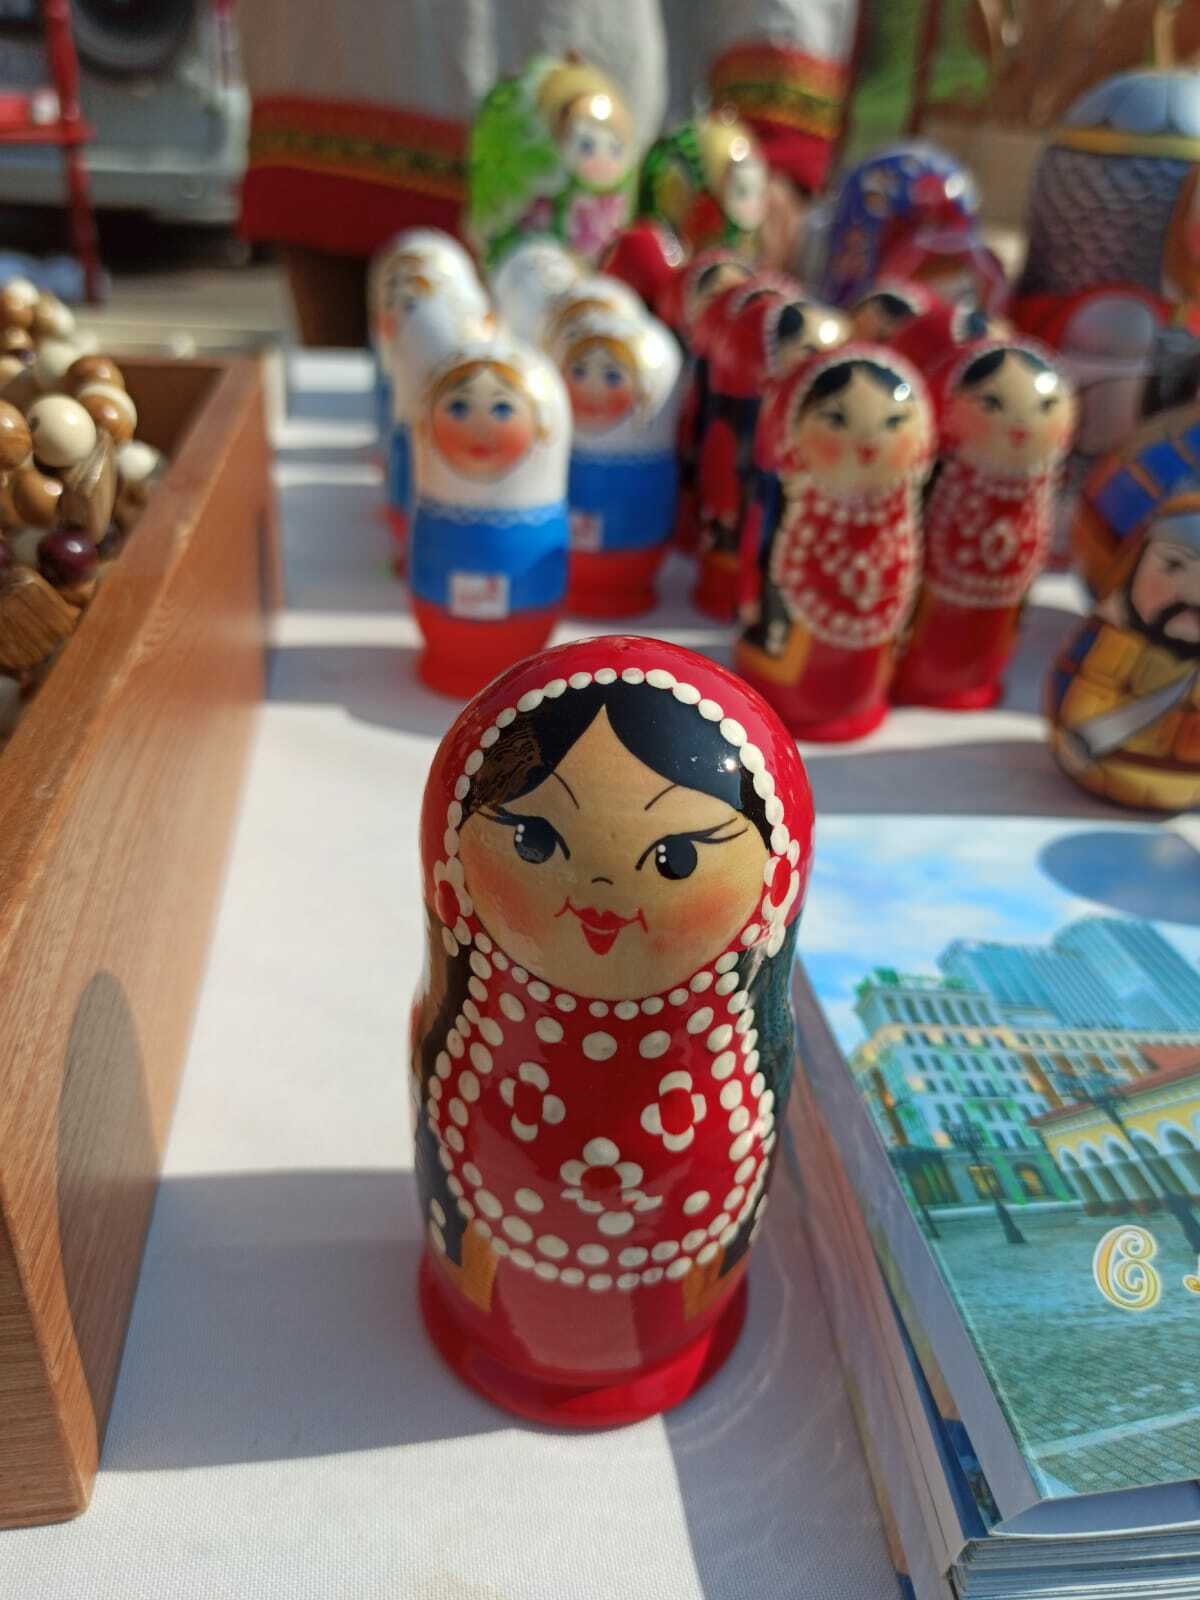 Башкирские матрешки, бурзянский мед и необычные магниты: что пользуется популярностью у гостей чемпионата WorldSkills